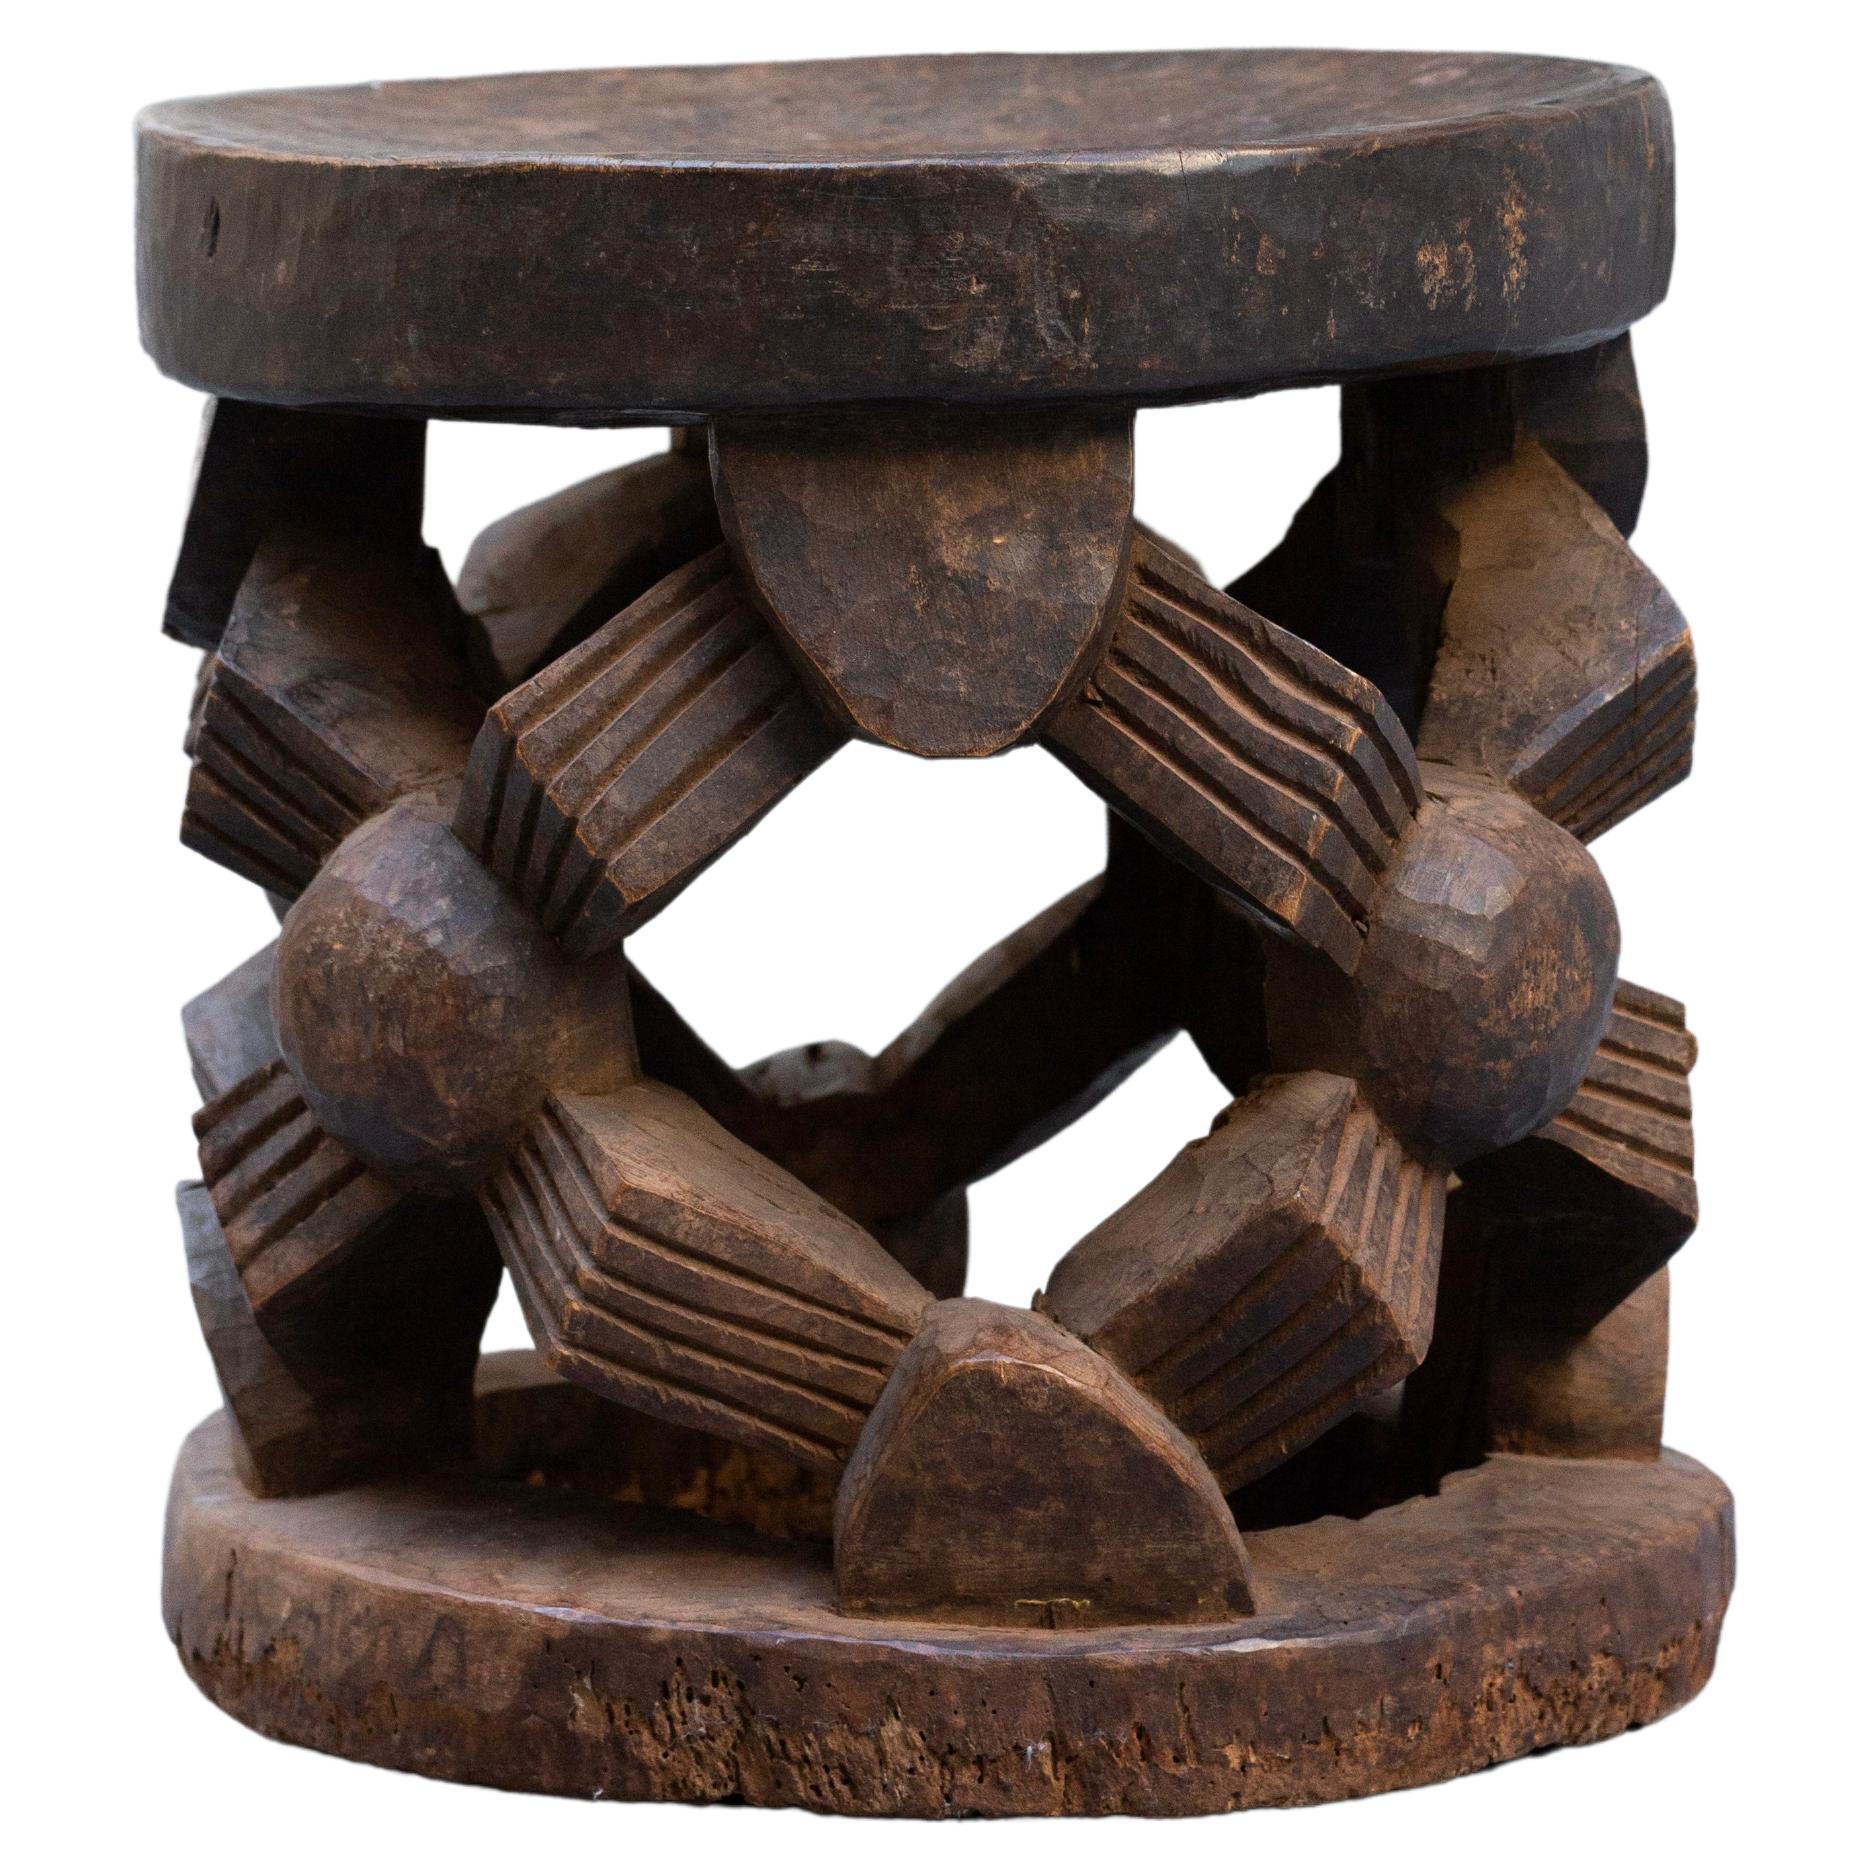 Bamileke-Hocker aus Holz mit altem braunem Patina